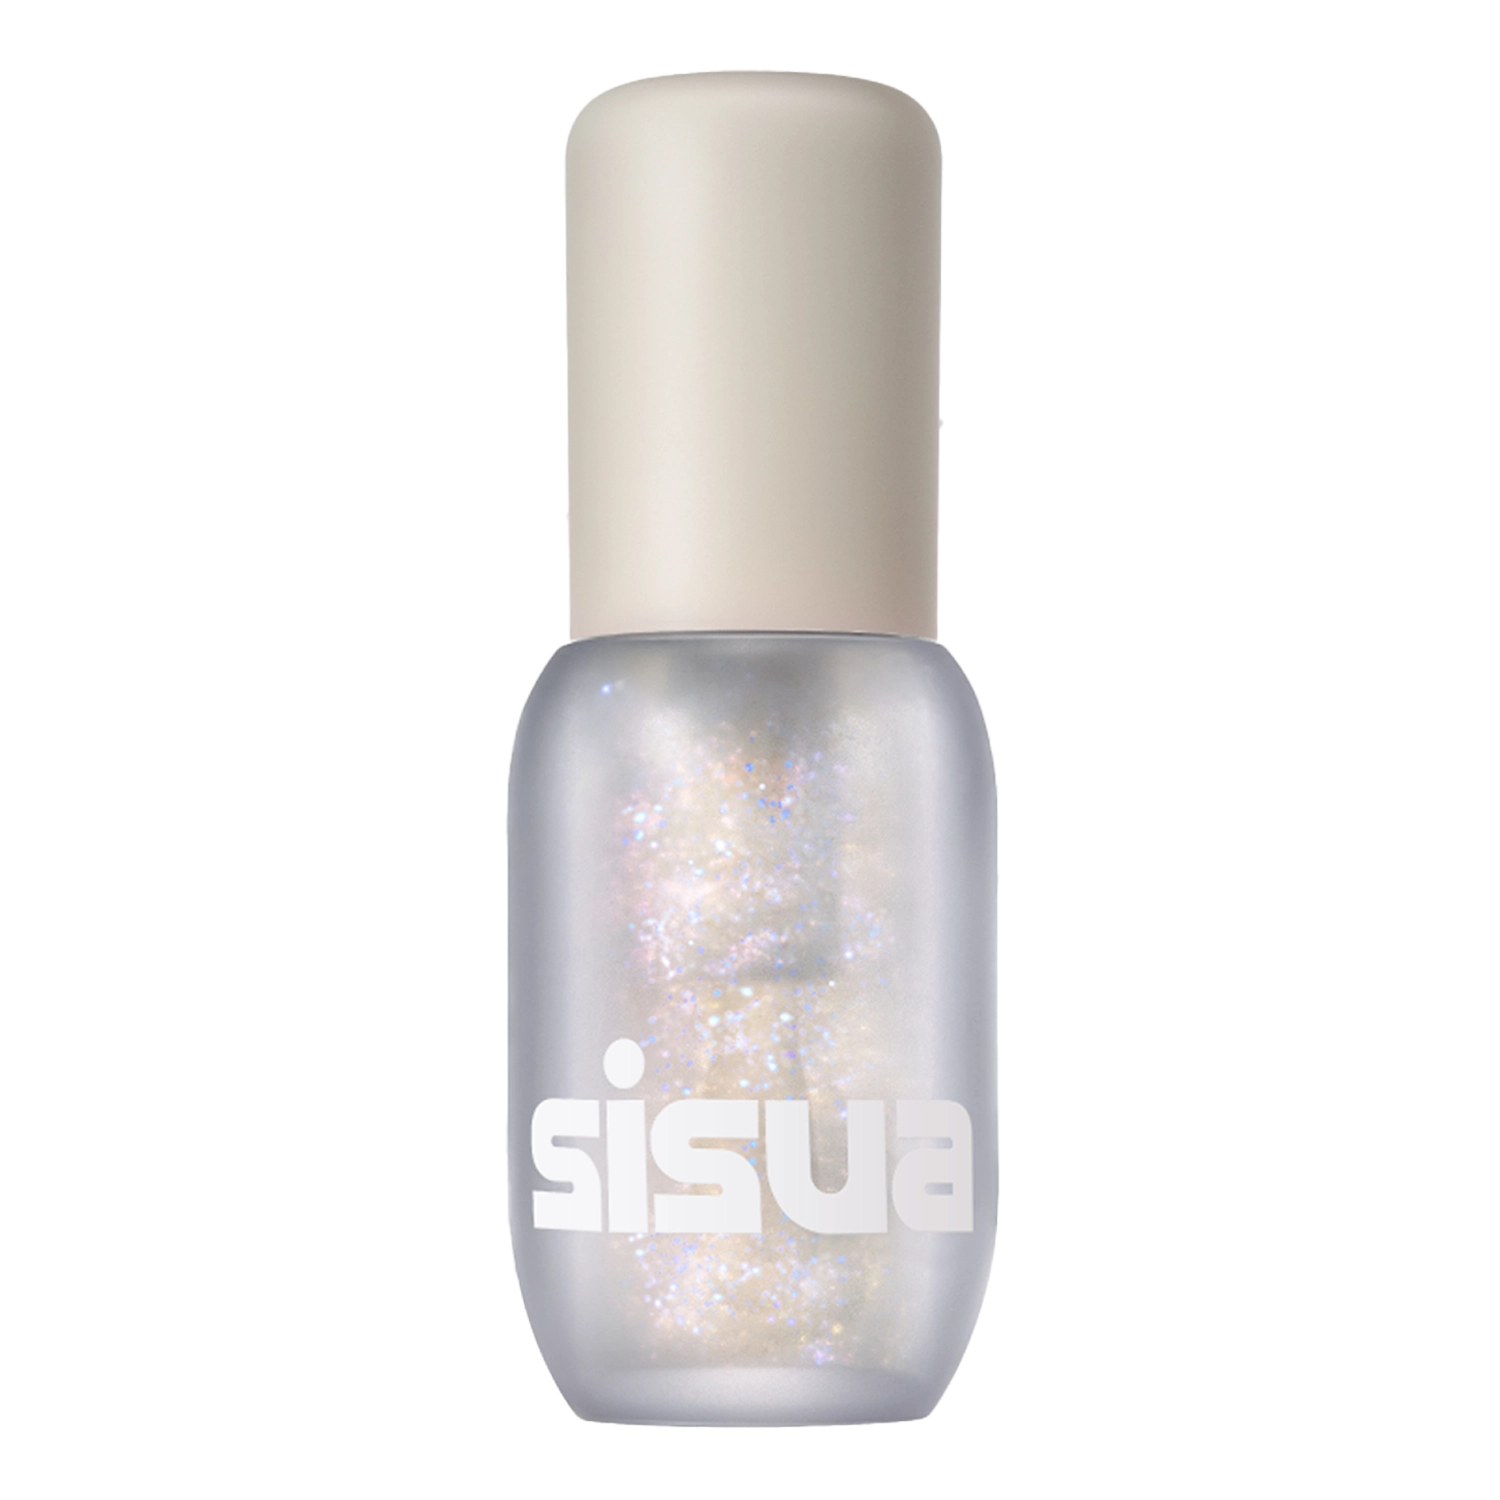 Unleashia - Sisua Popcorn Syrup Lip Plumper - Feuchtigkeitsspendender Lipgloss - No.100 Unicorn Salt  - 3.8g